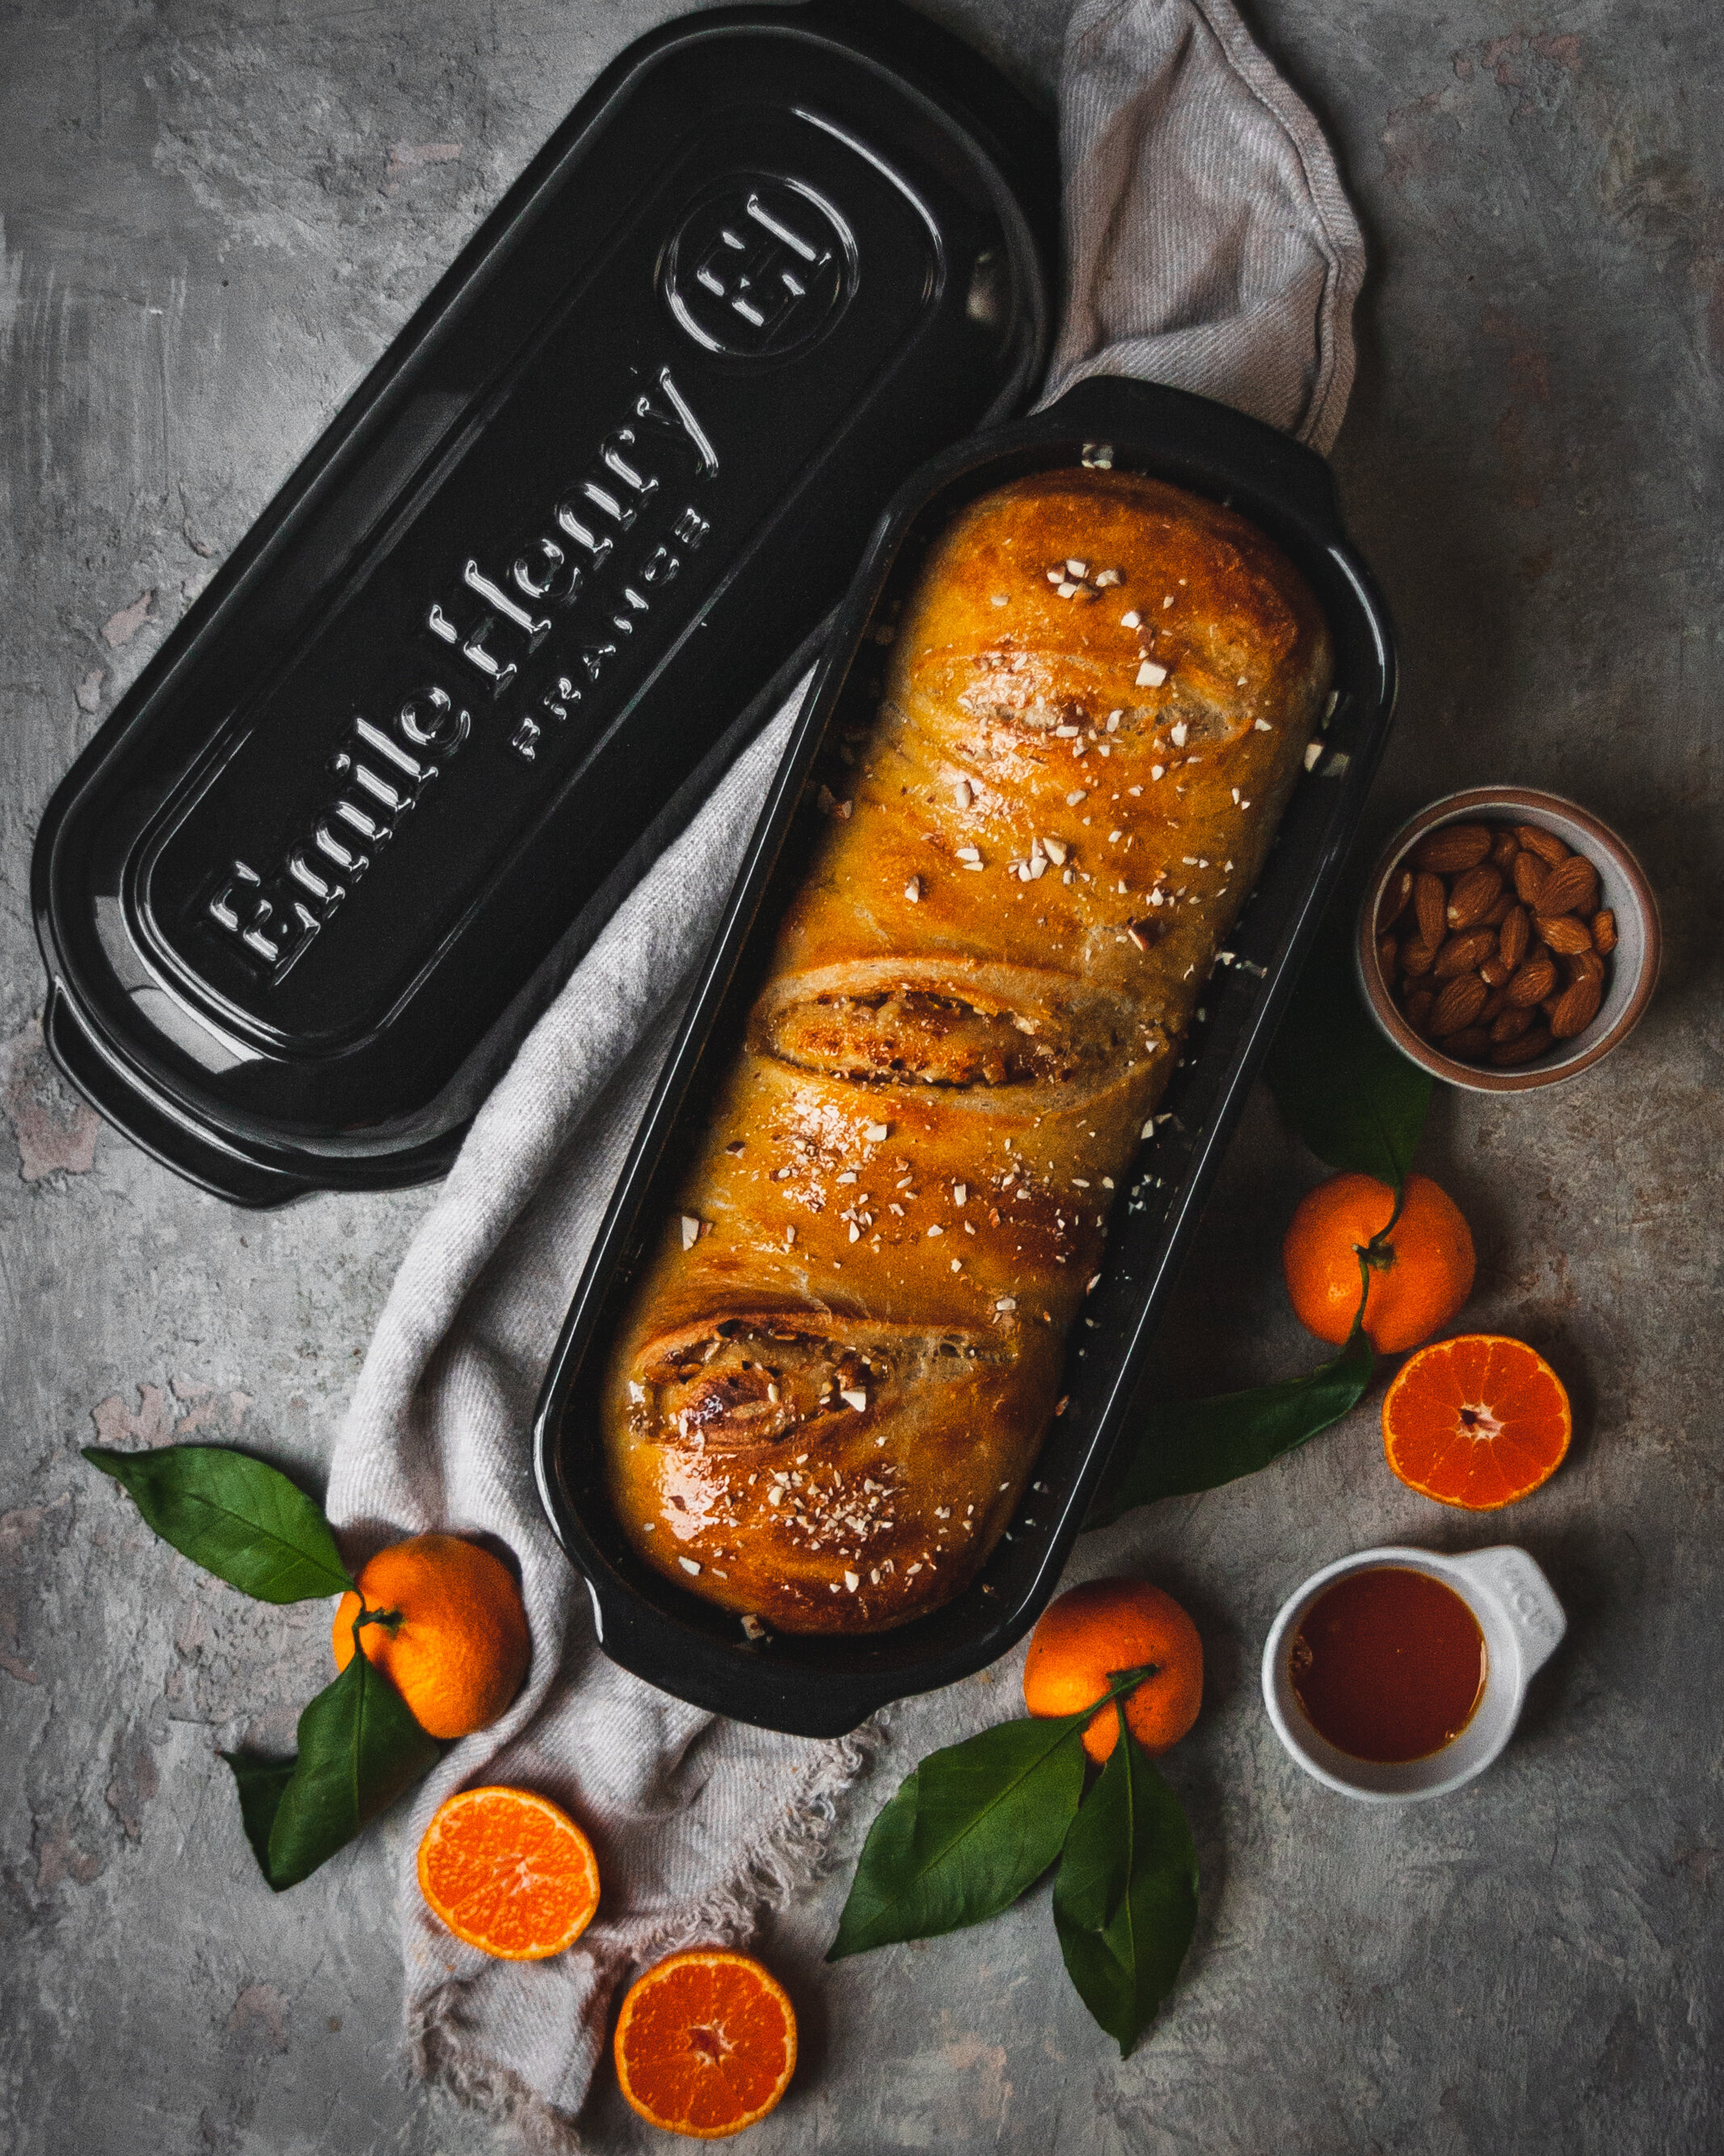 Lid - Large Bread Loaf Baker - Emile Henry